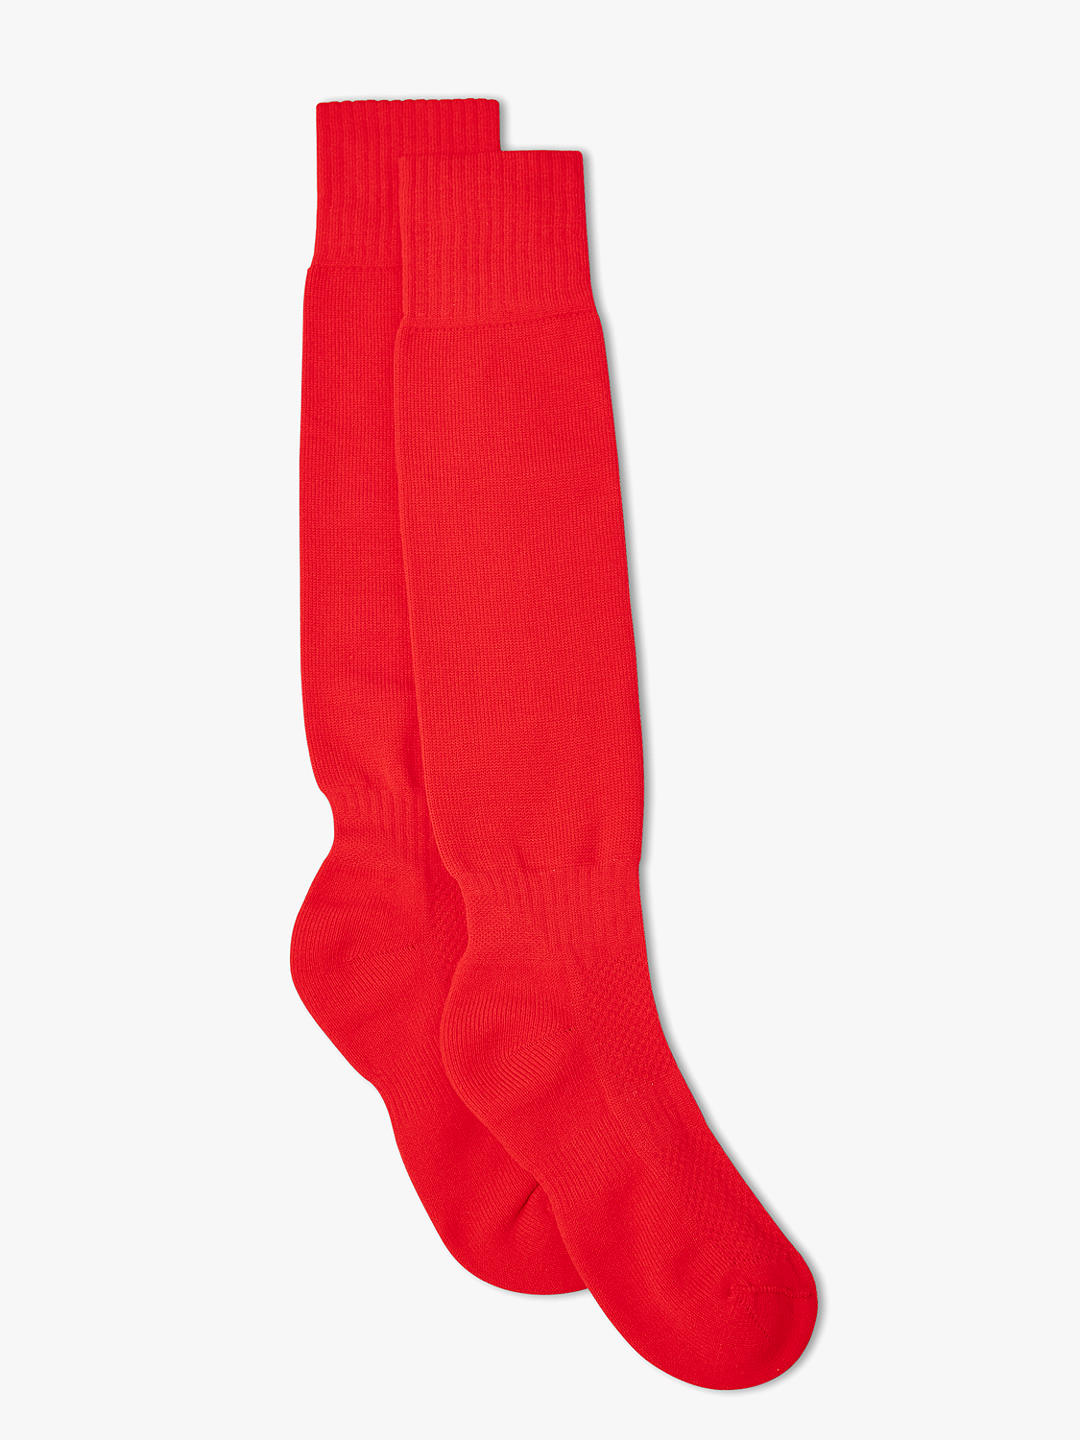 Unisex Games Socks, Red